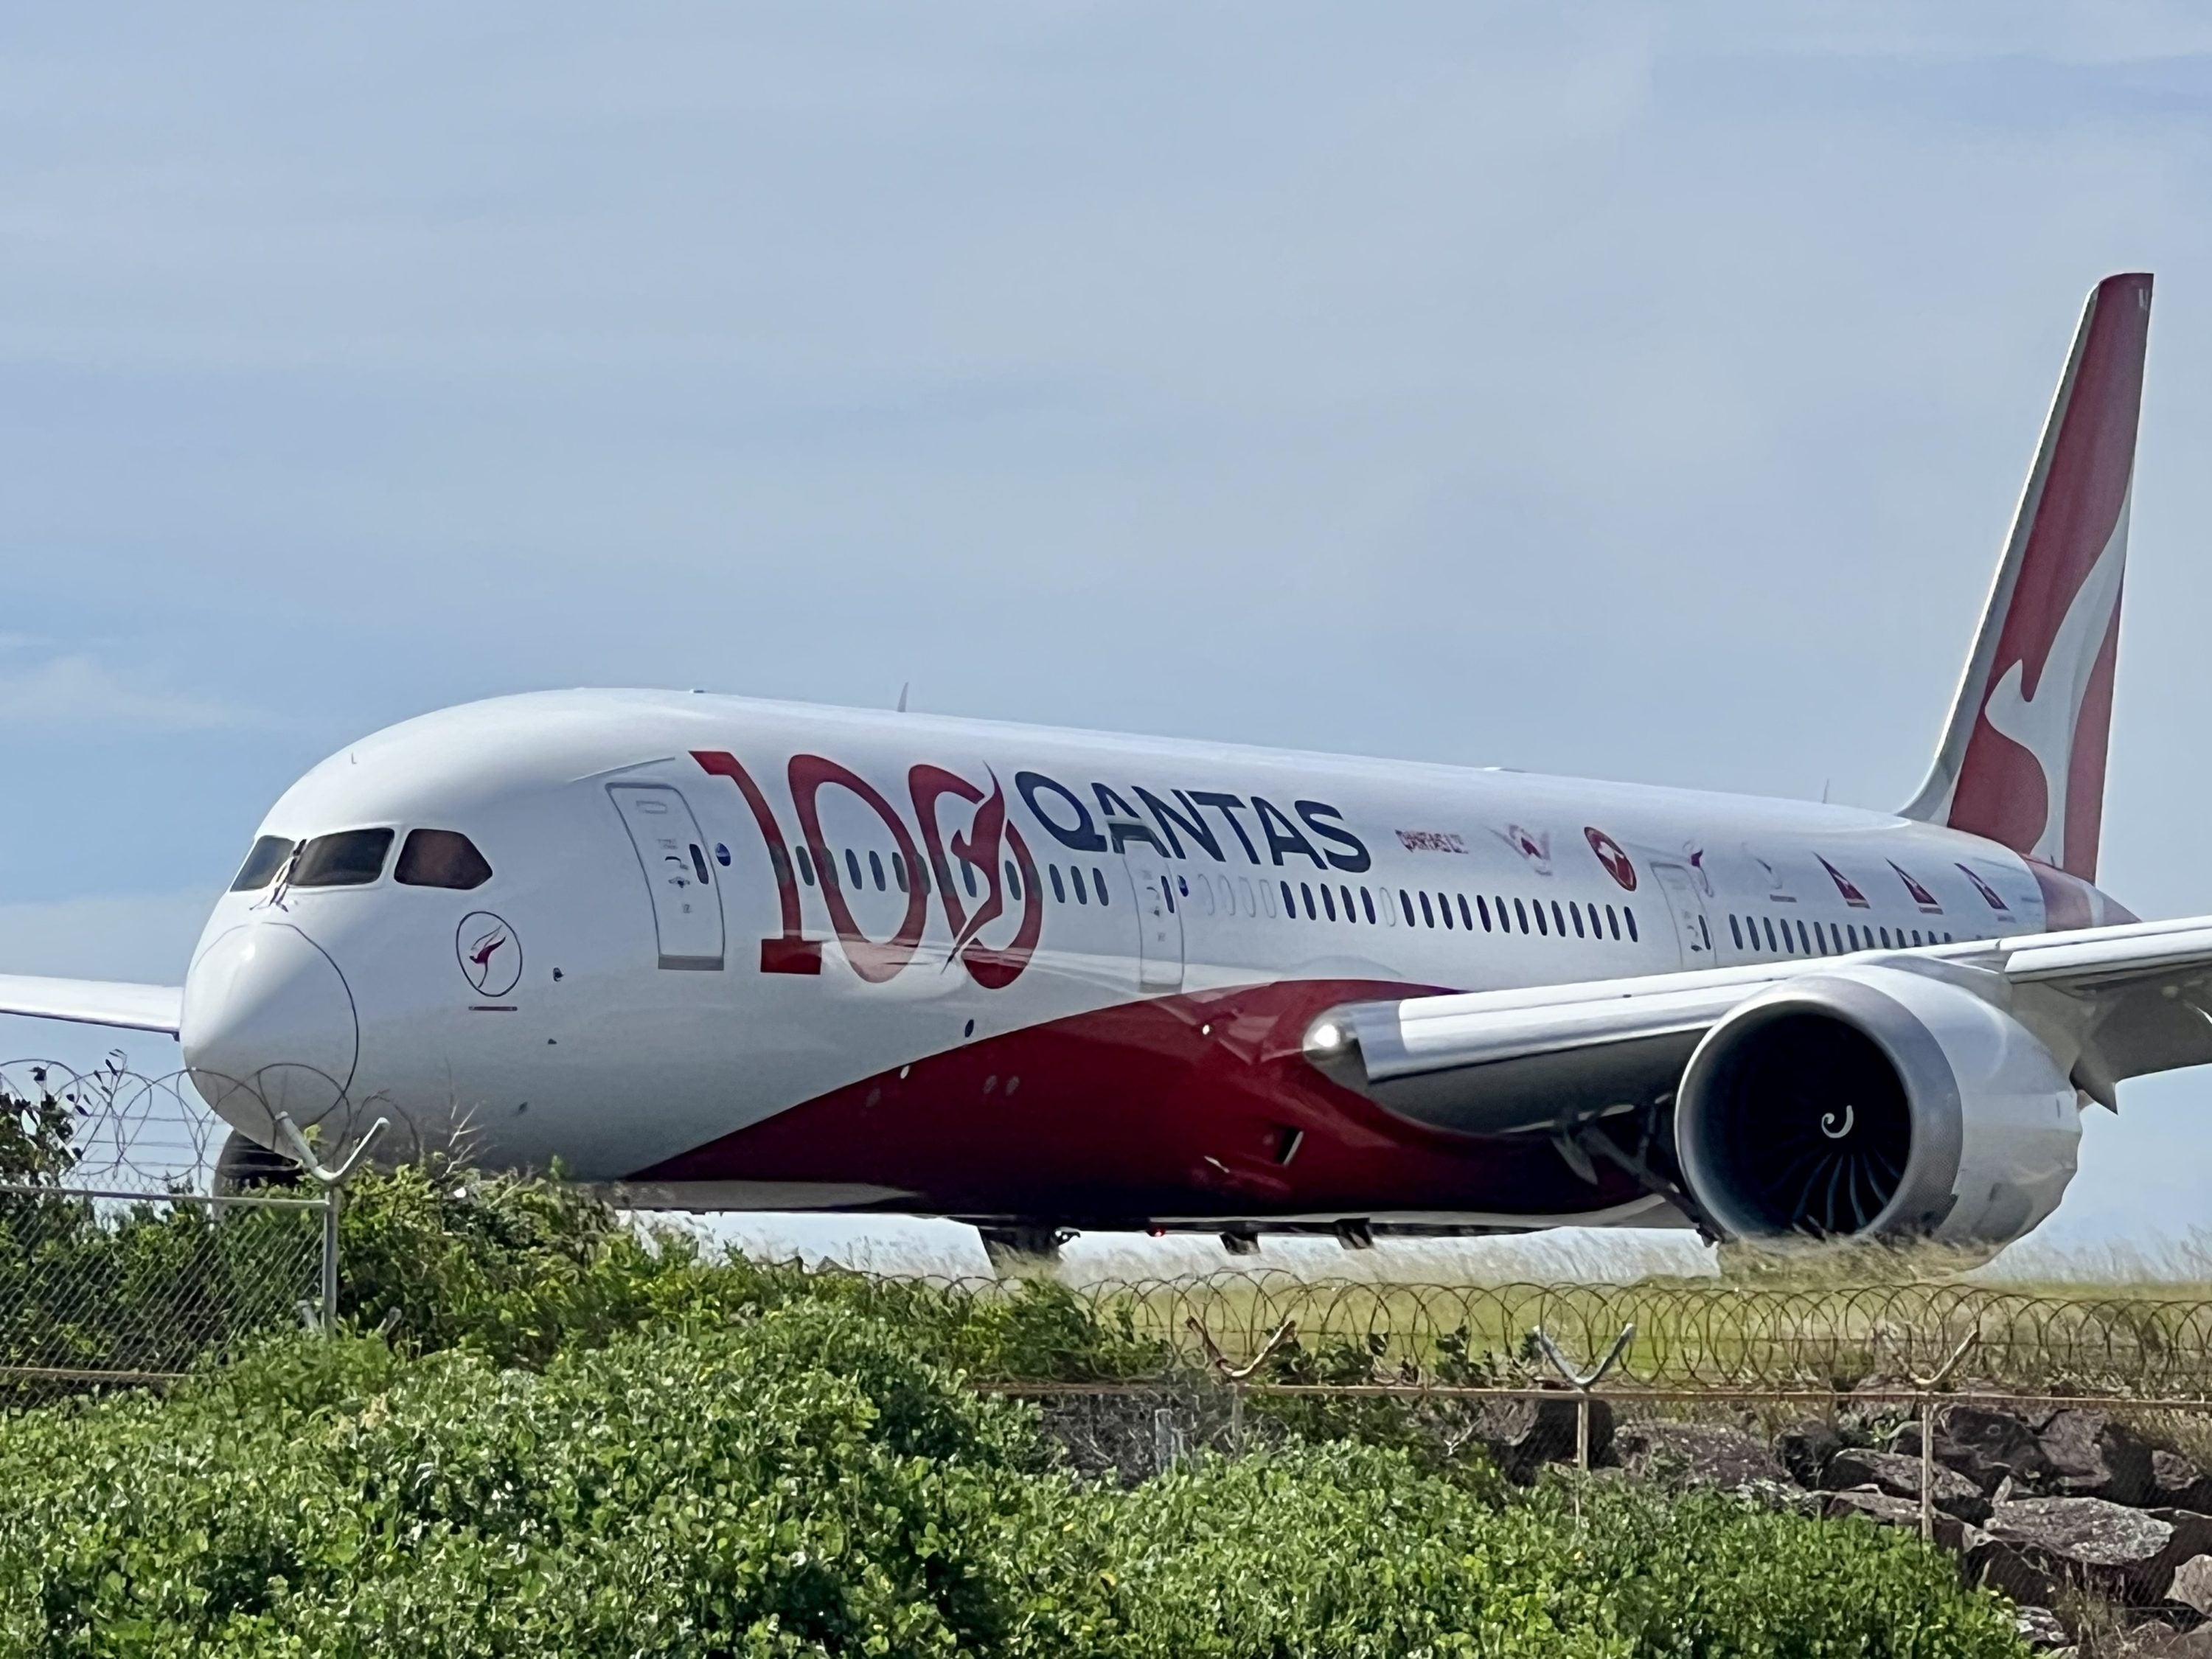 Qantas Dreamliner at SYD